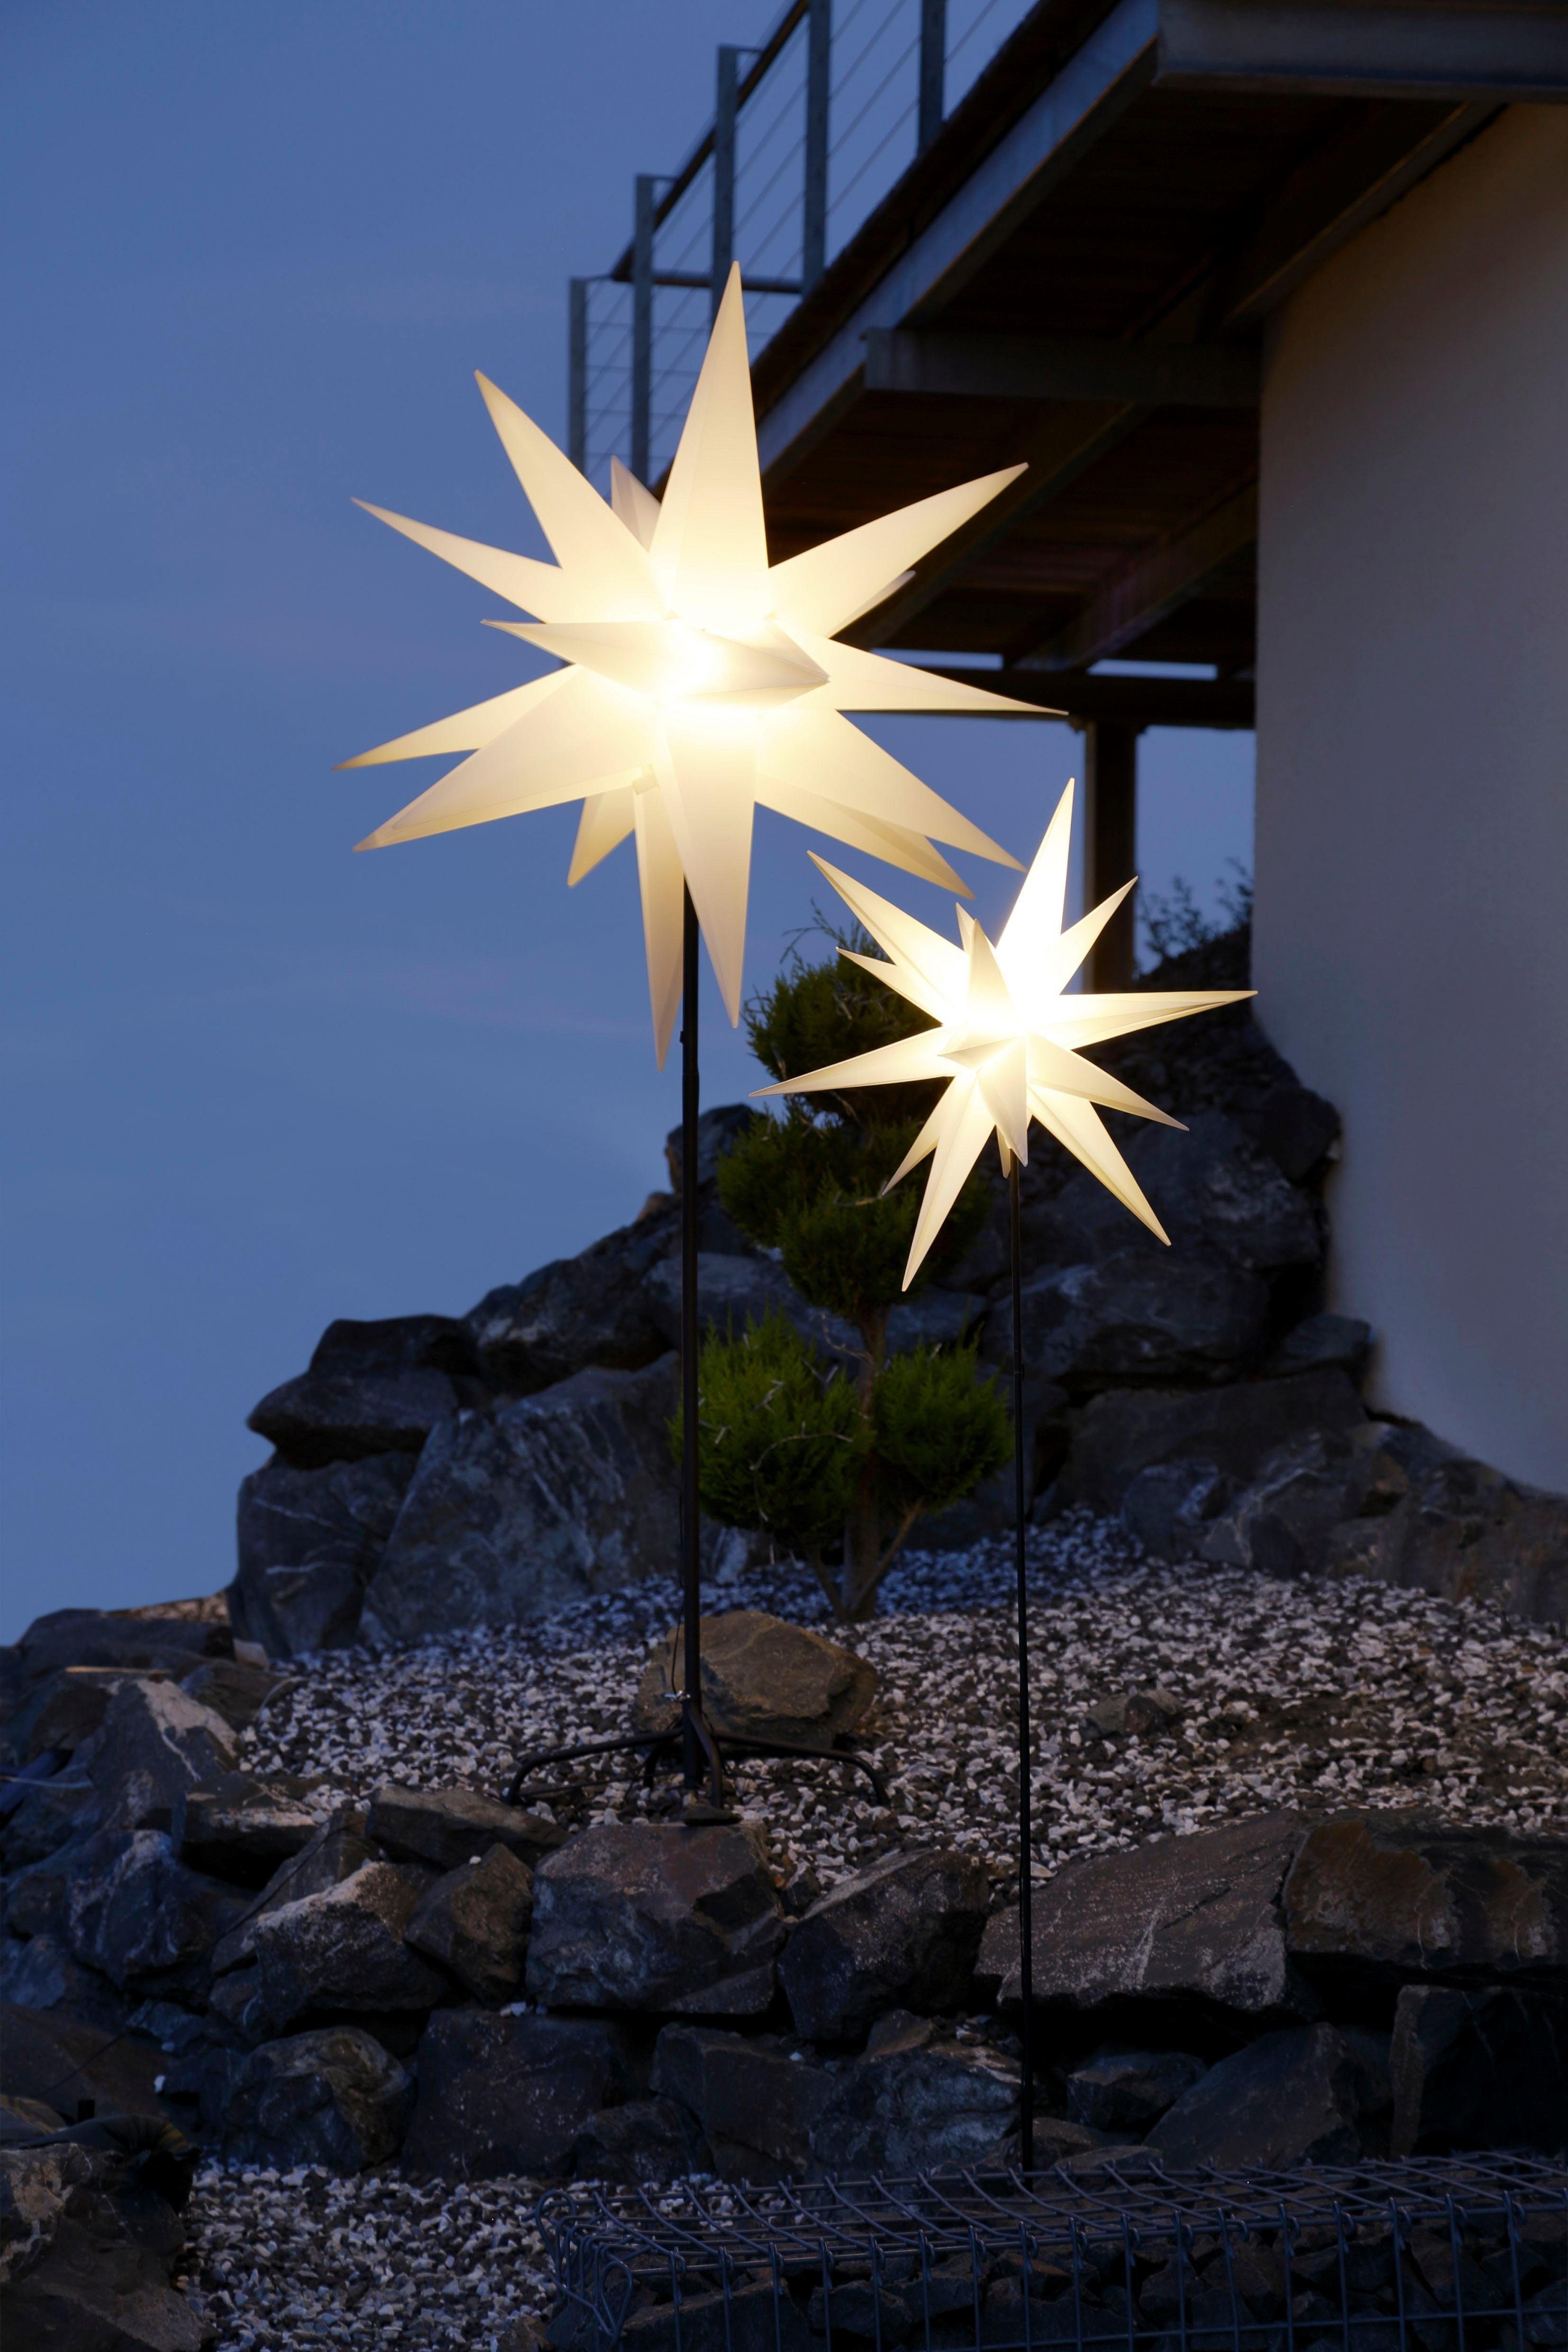 XL Outdoor Tanne 3er Set LED Beleuchtung Lichterkette Weihnachts Deko Stern  Baum